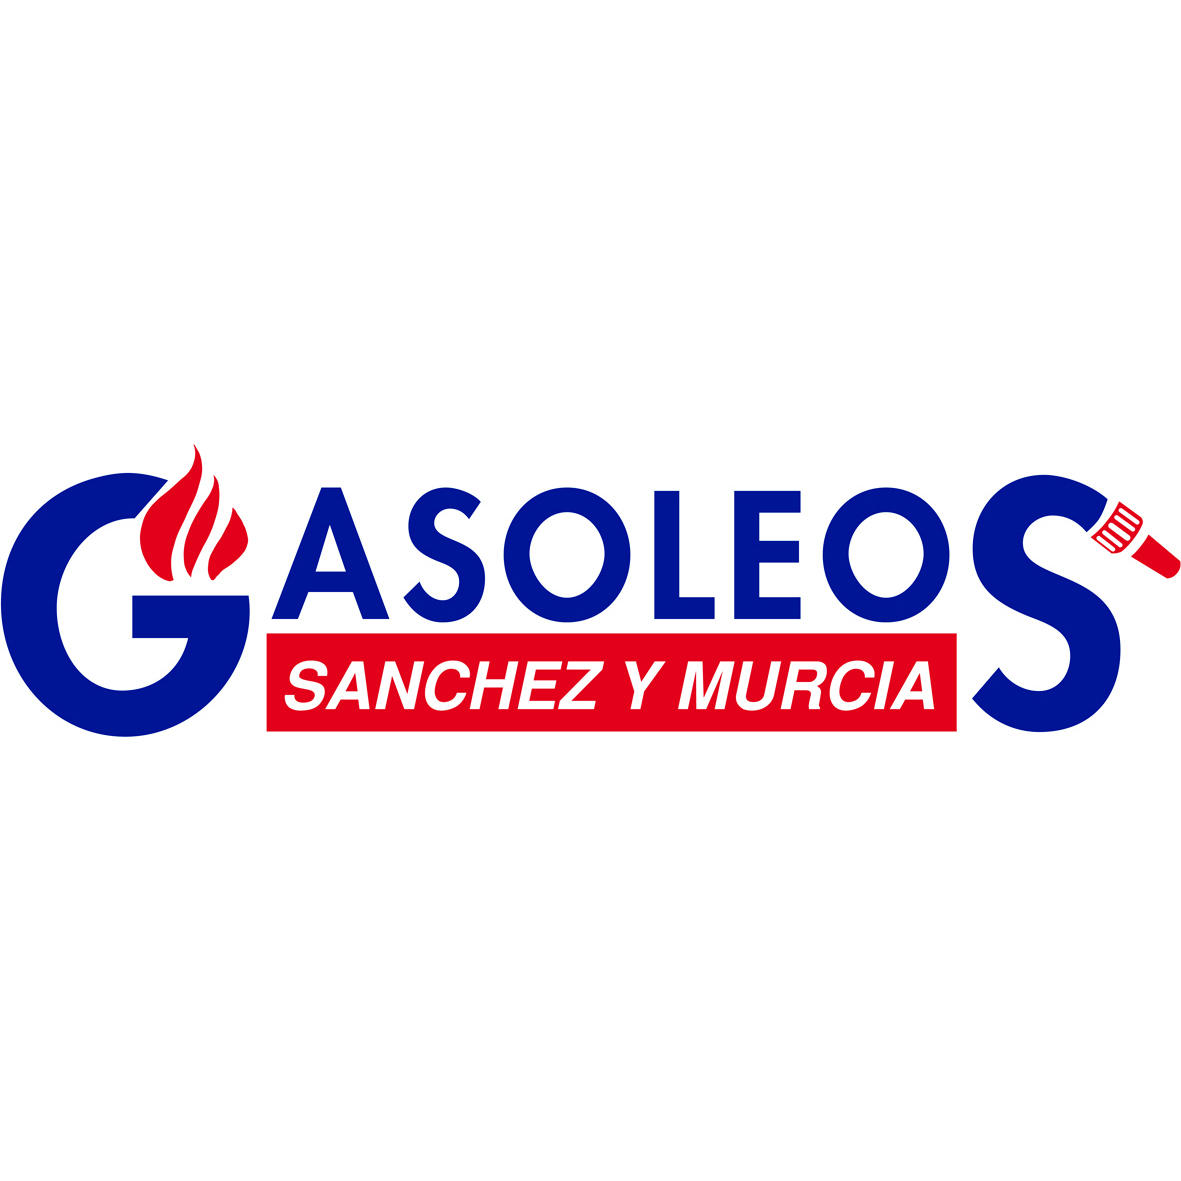 Gasóleos Sánchez y Murcia BP Logo